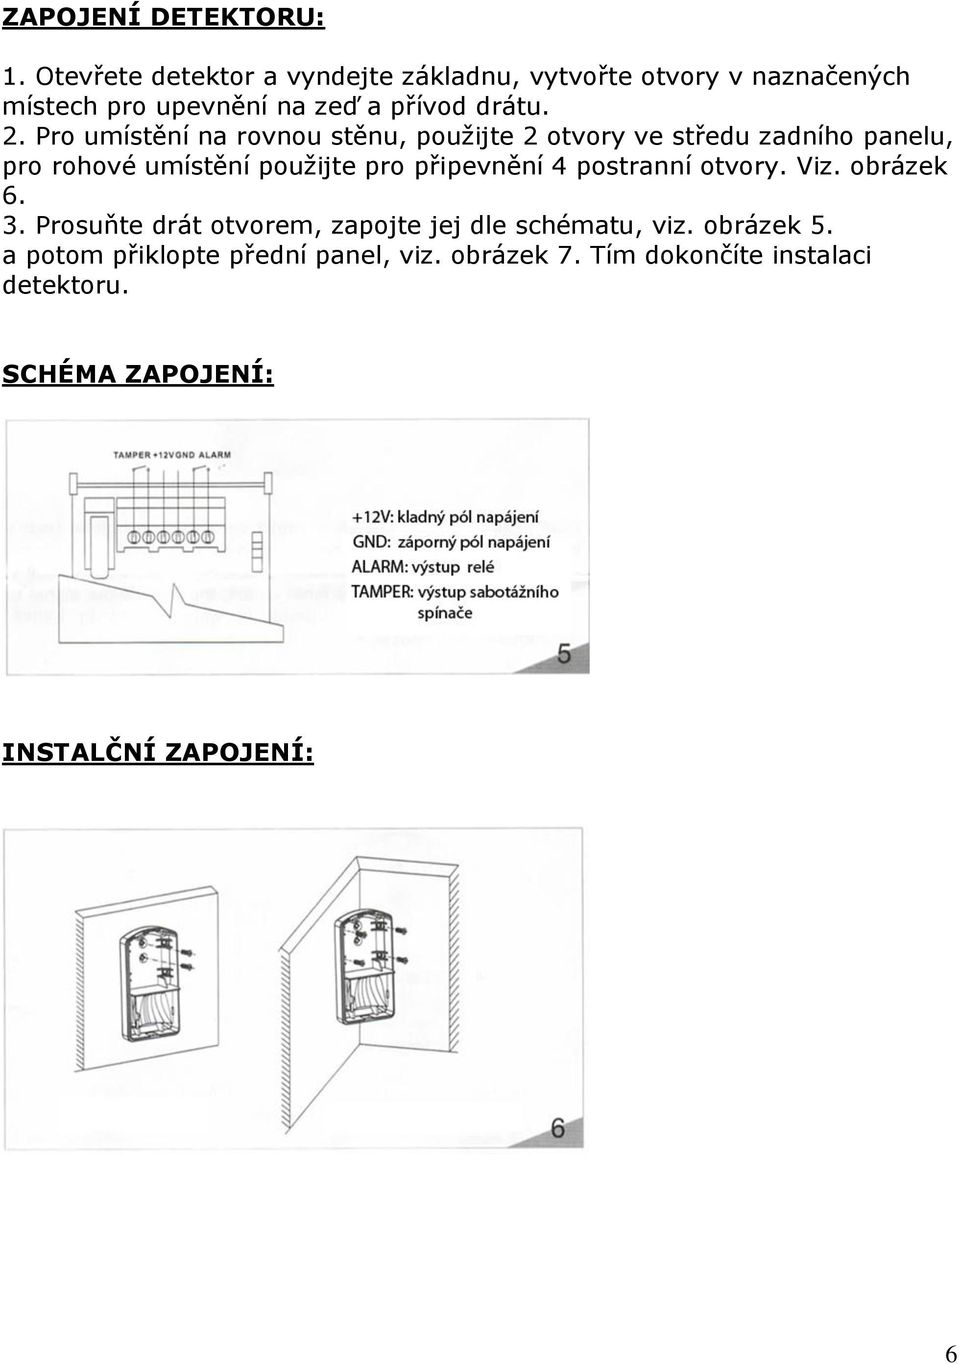 Pro umístění na rovnou stěnu, použijte 2 otvory ve středu zadního panelu, pro rohové umístění použijte pro připevnění 4